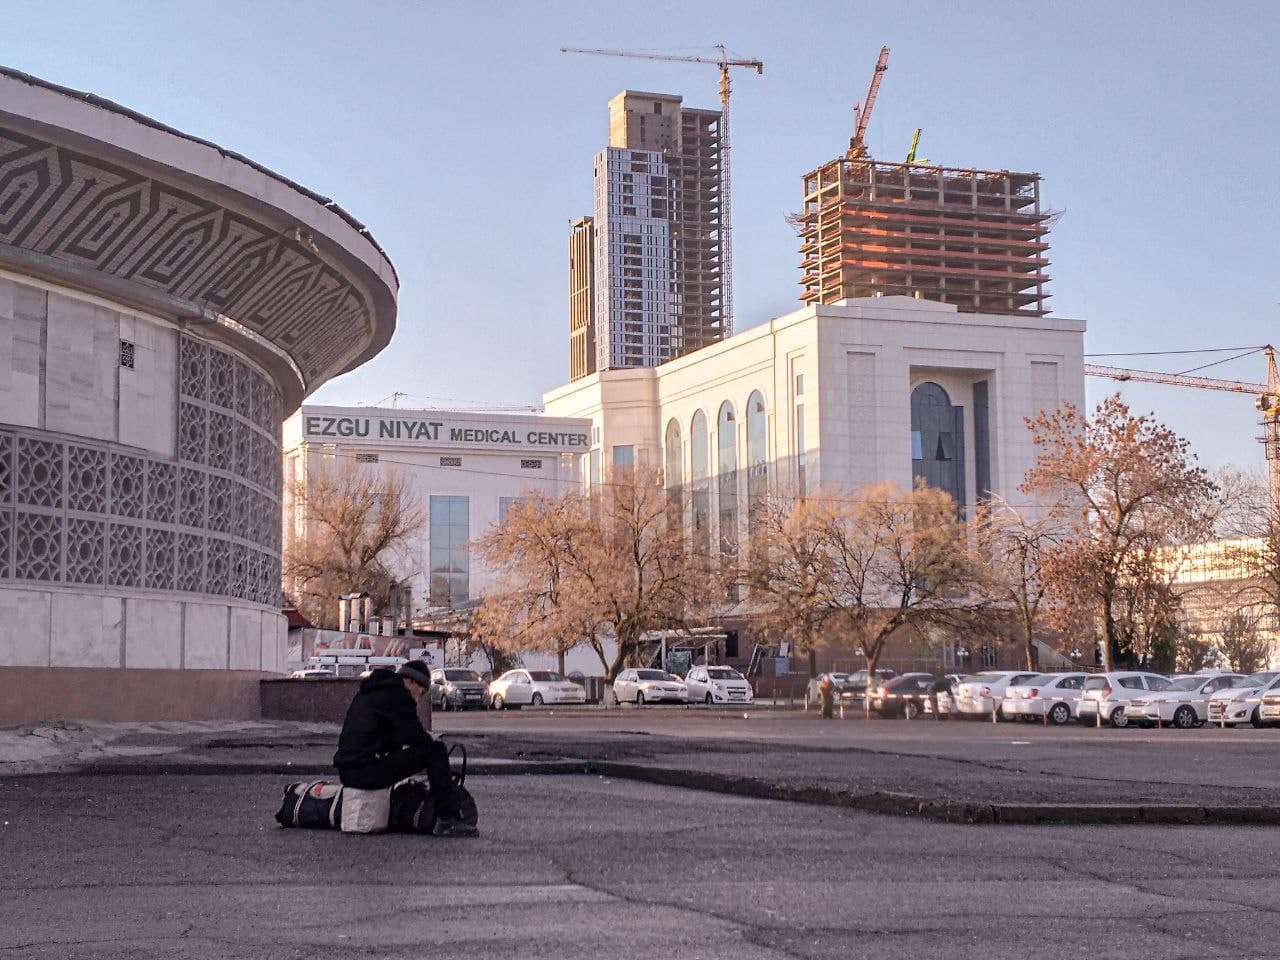 Tashkent City yaqinida yuklari bilan vaqtinchalik yashashga uy izlayotgan odam.